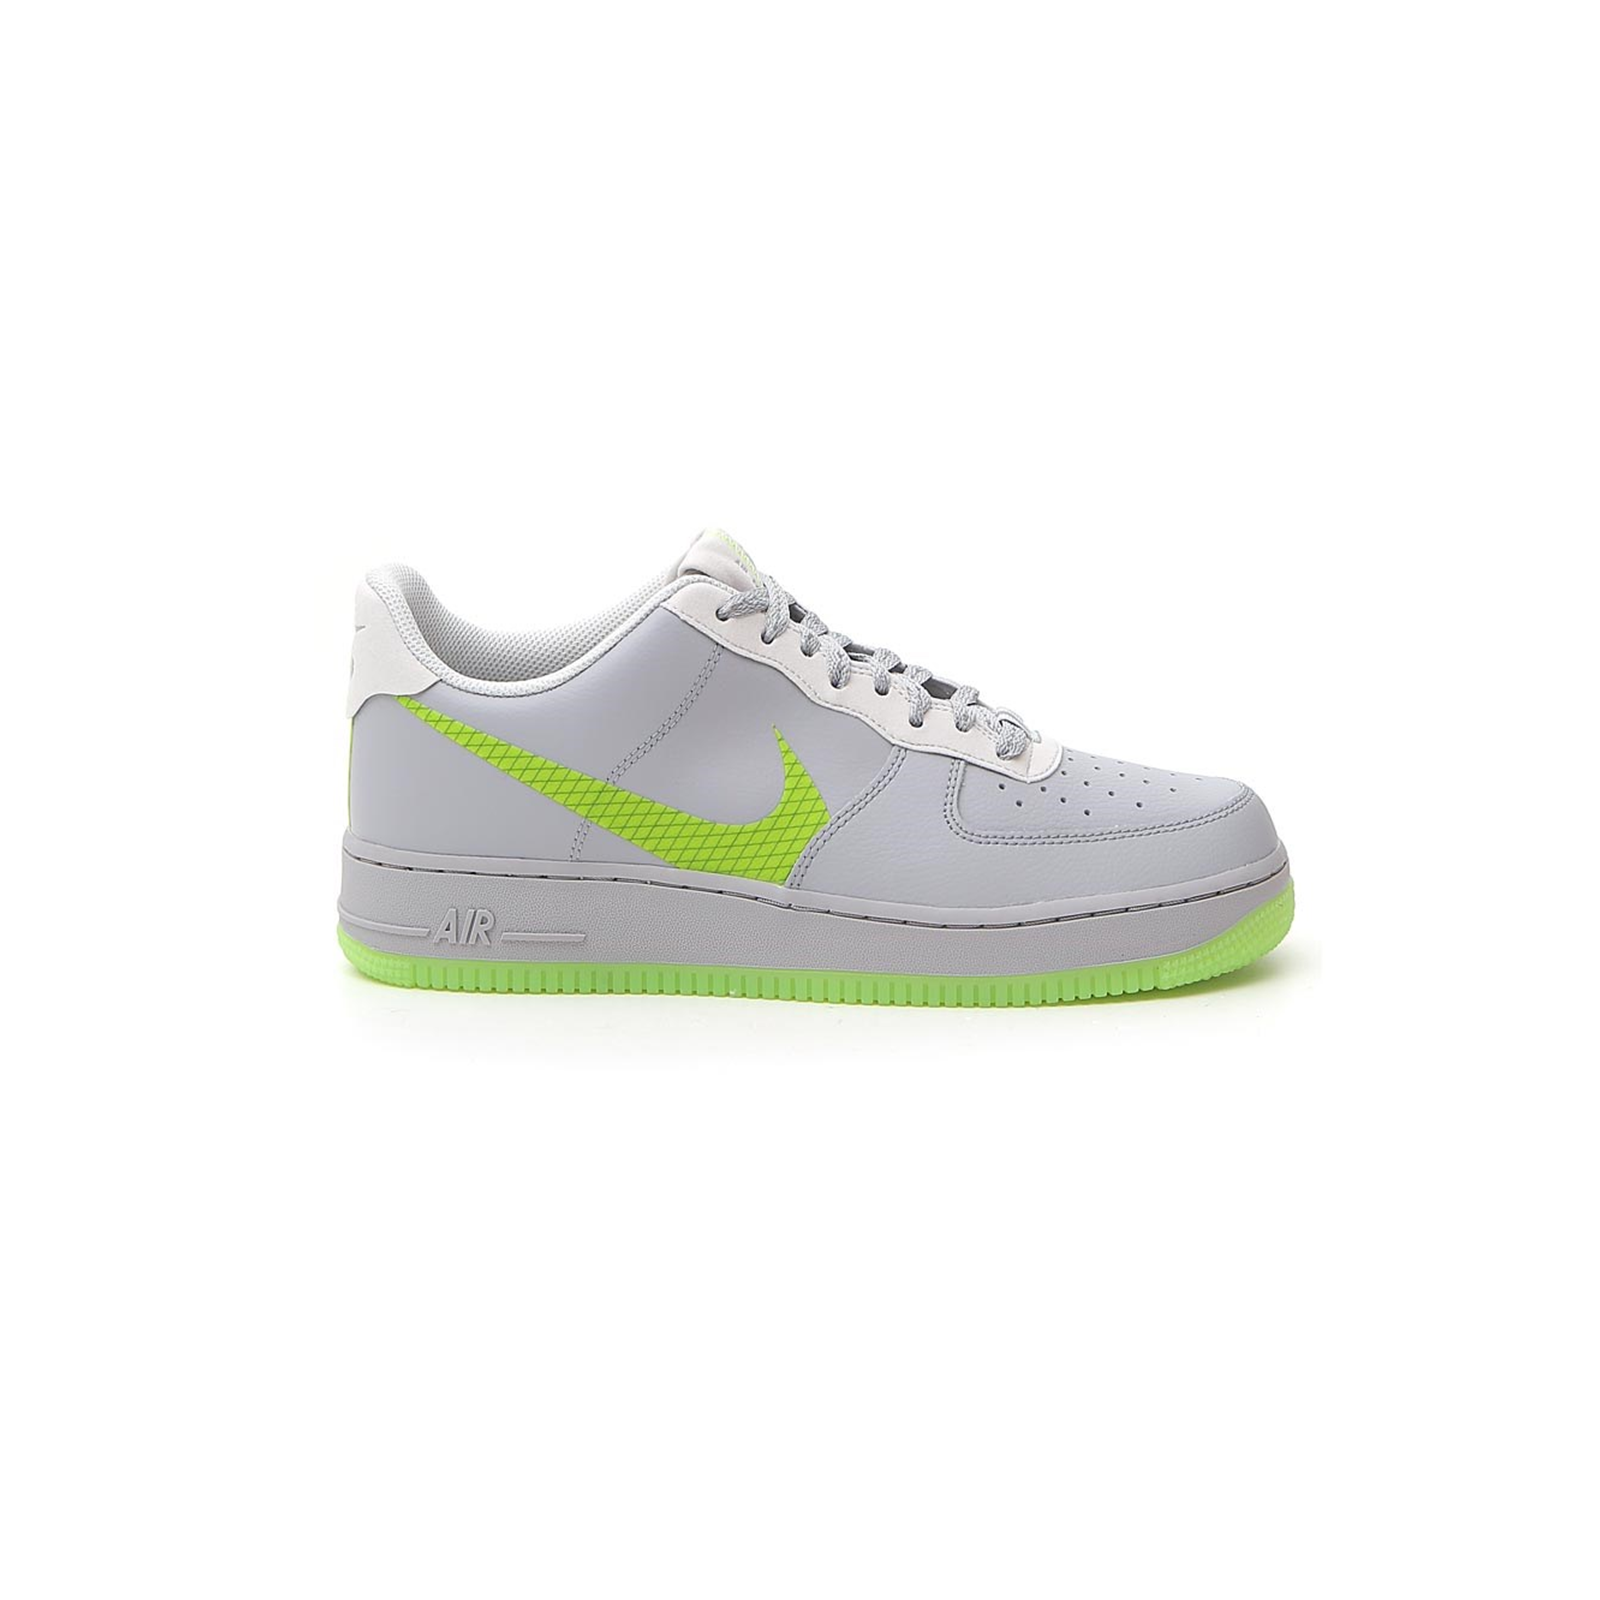 Scarpette Nike Air Force 1 LV8 3 GS CD7409002 colore grigio/verde listino €  110 | eBay